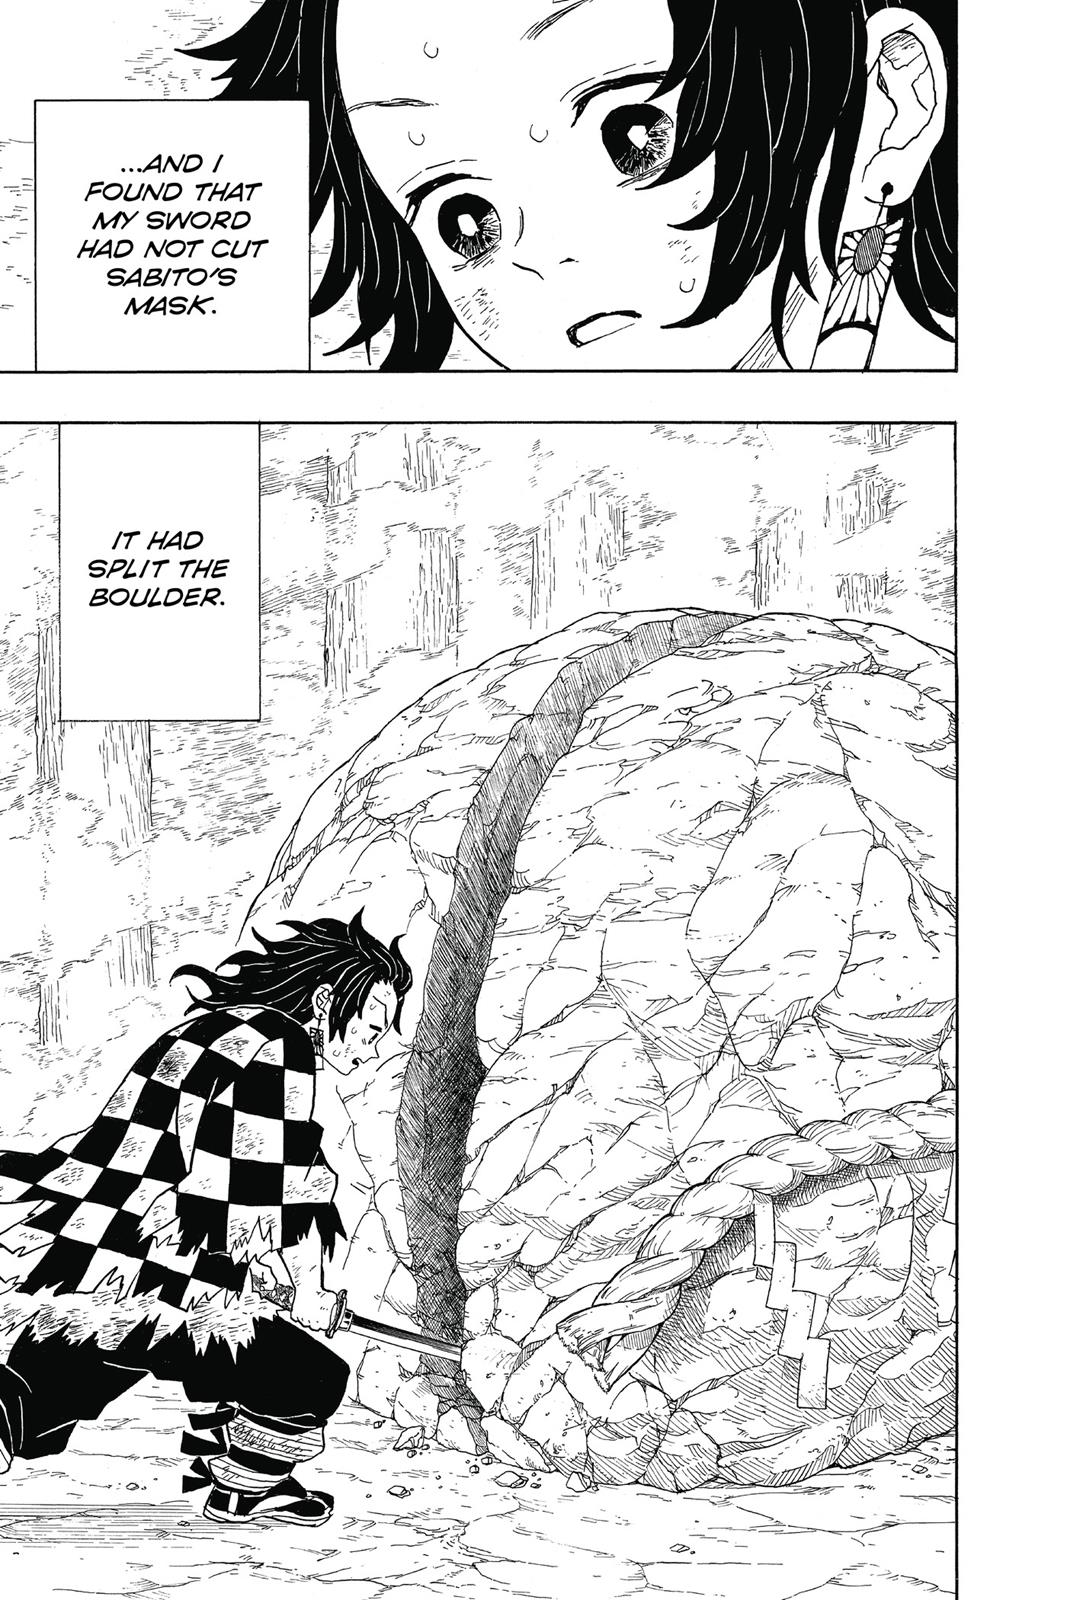 Demon Slayer Manga Manga Chapter - 5 - image 12